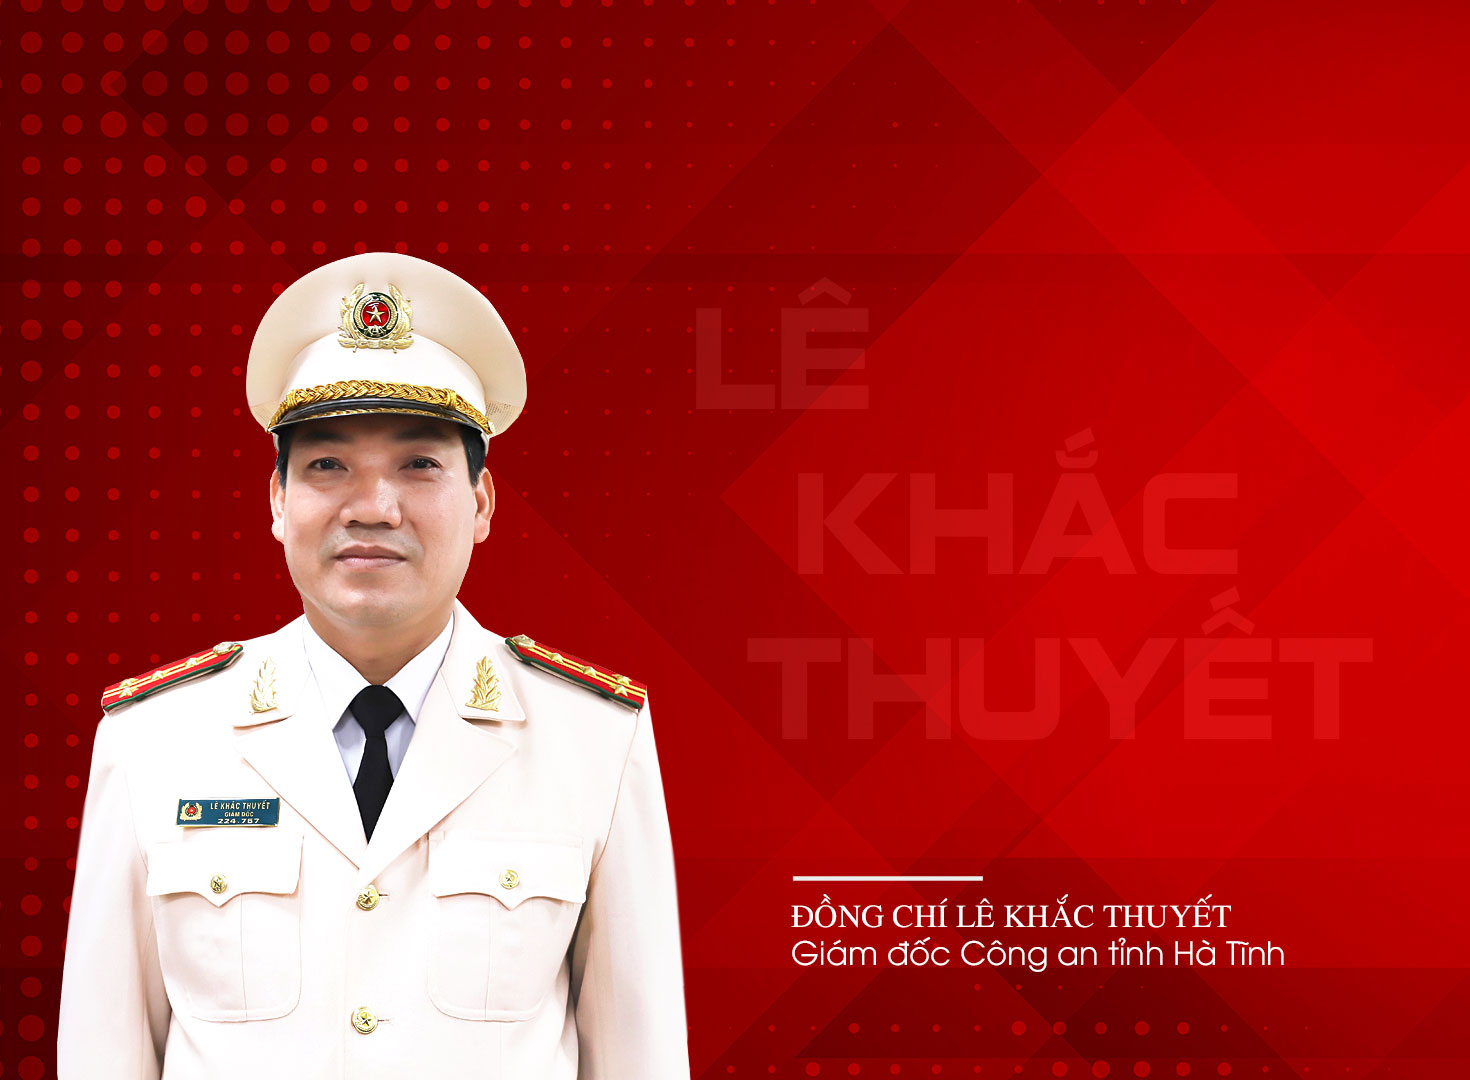 Lê Khắc Thuyết - Giám đốc Công an tỉnh Hà Tĩnh